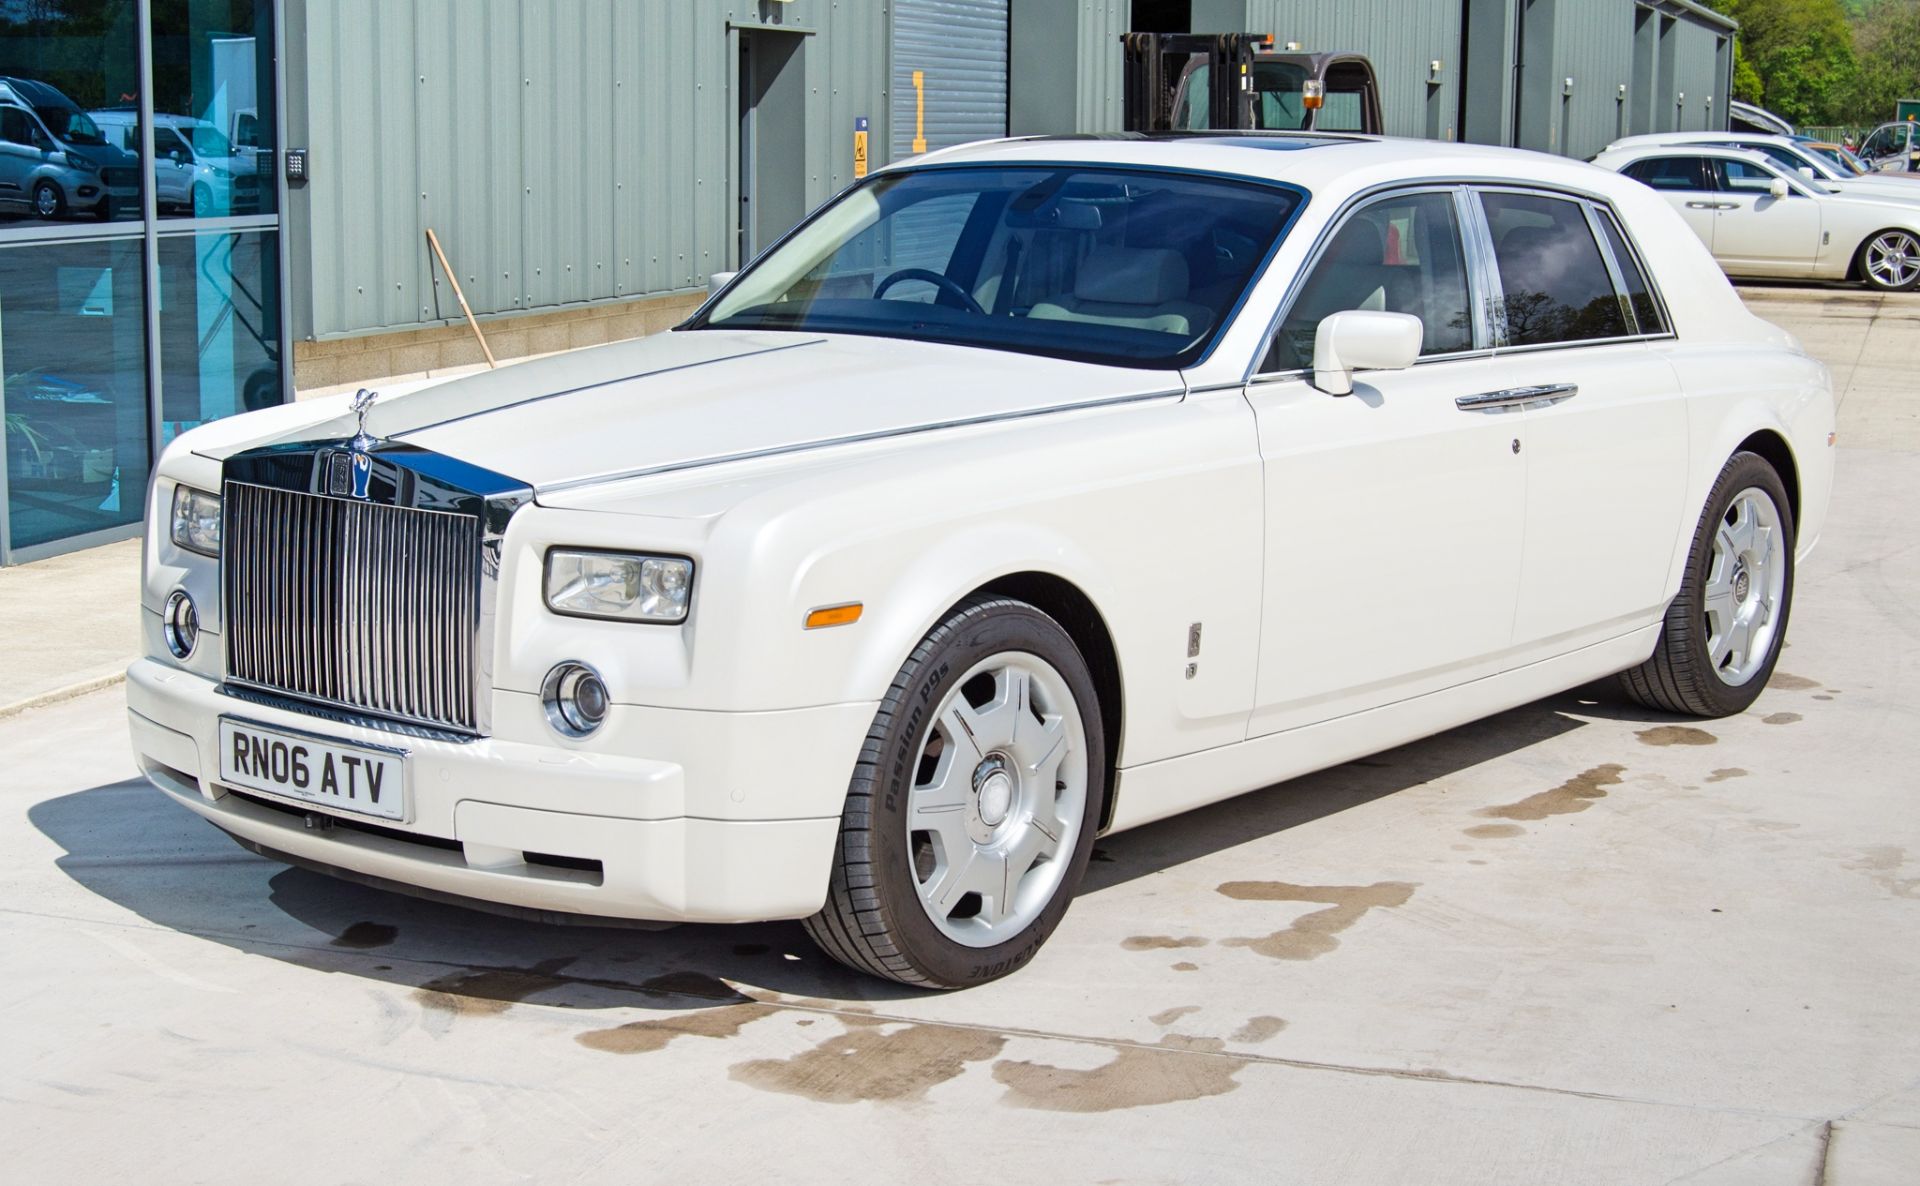 Rolls Royce Phantom 6749cc V12 Auto 4 door saloon car Registration Number: RN06 ATV Date of